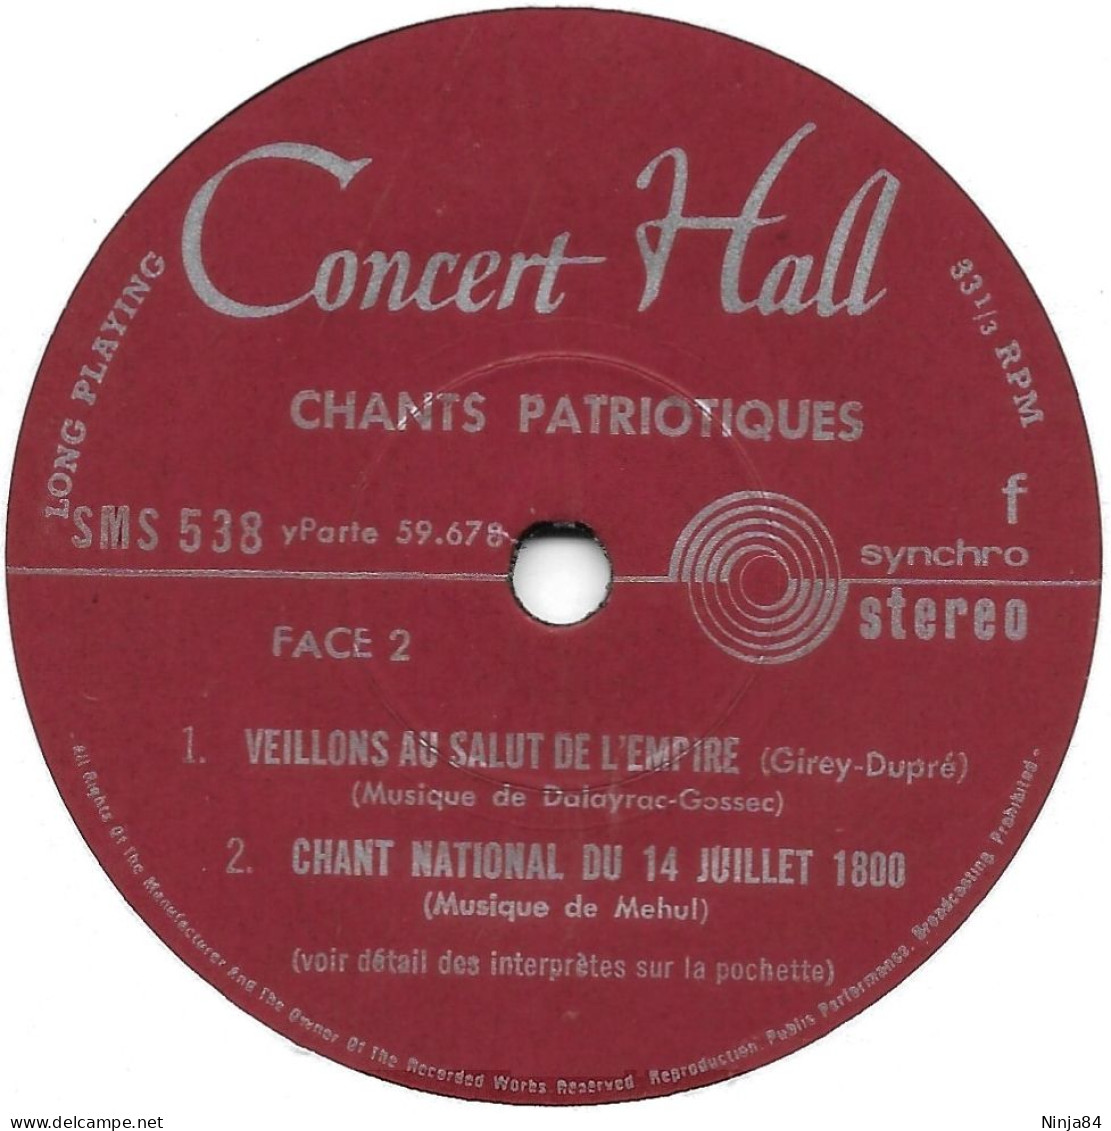 EP 45 RPM (7") Artistes Divers  "  Chants Patriotiques  " - Sonstige - Franz. Chansons